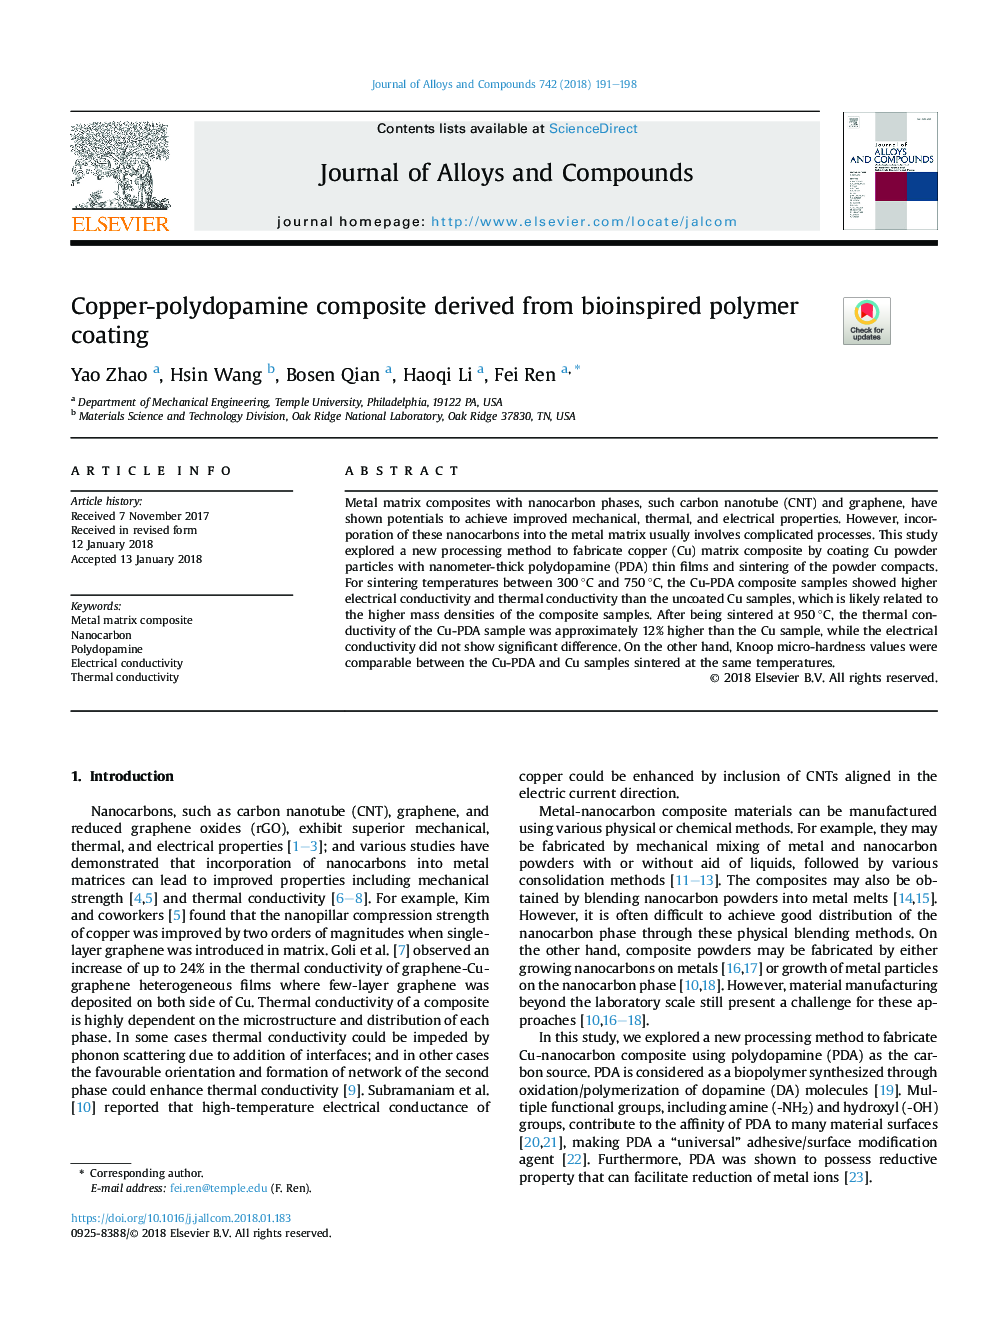 کامپوزیت مس-پلیدوپامین مشتق شده از پوشش پلیمری زیستی 